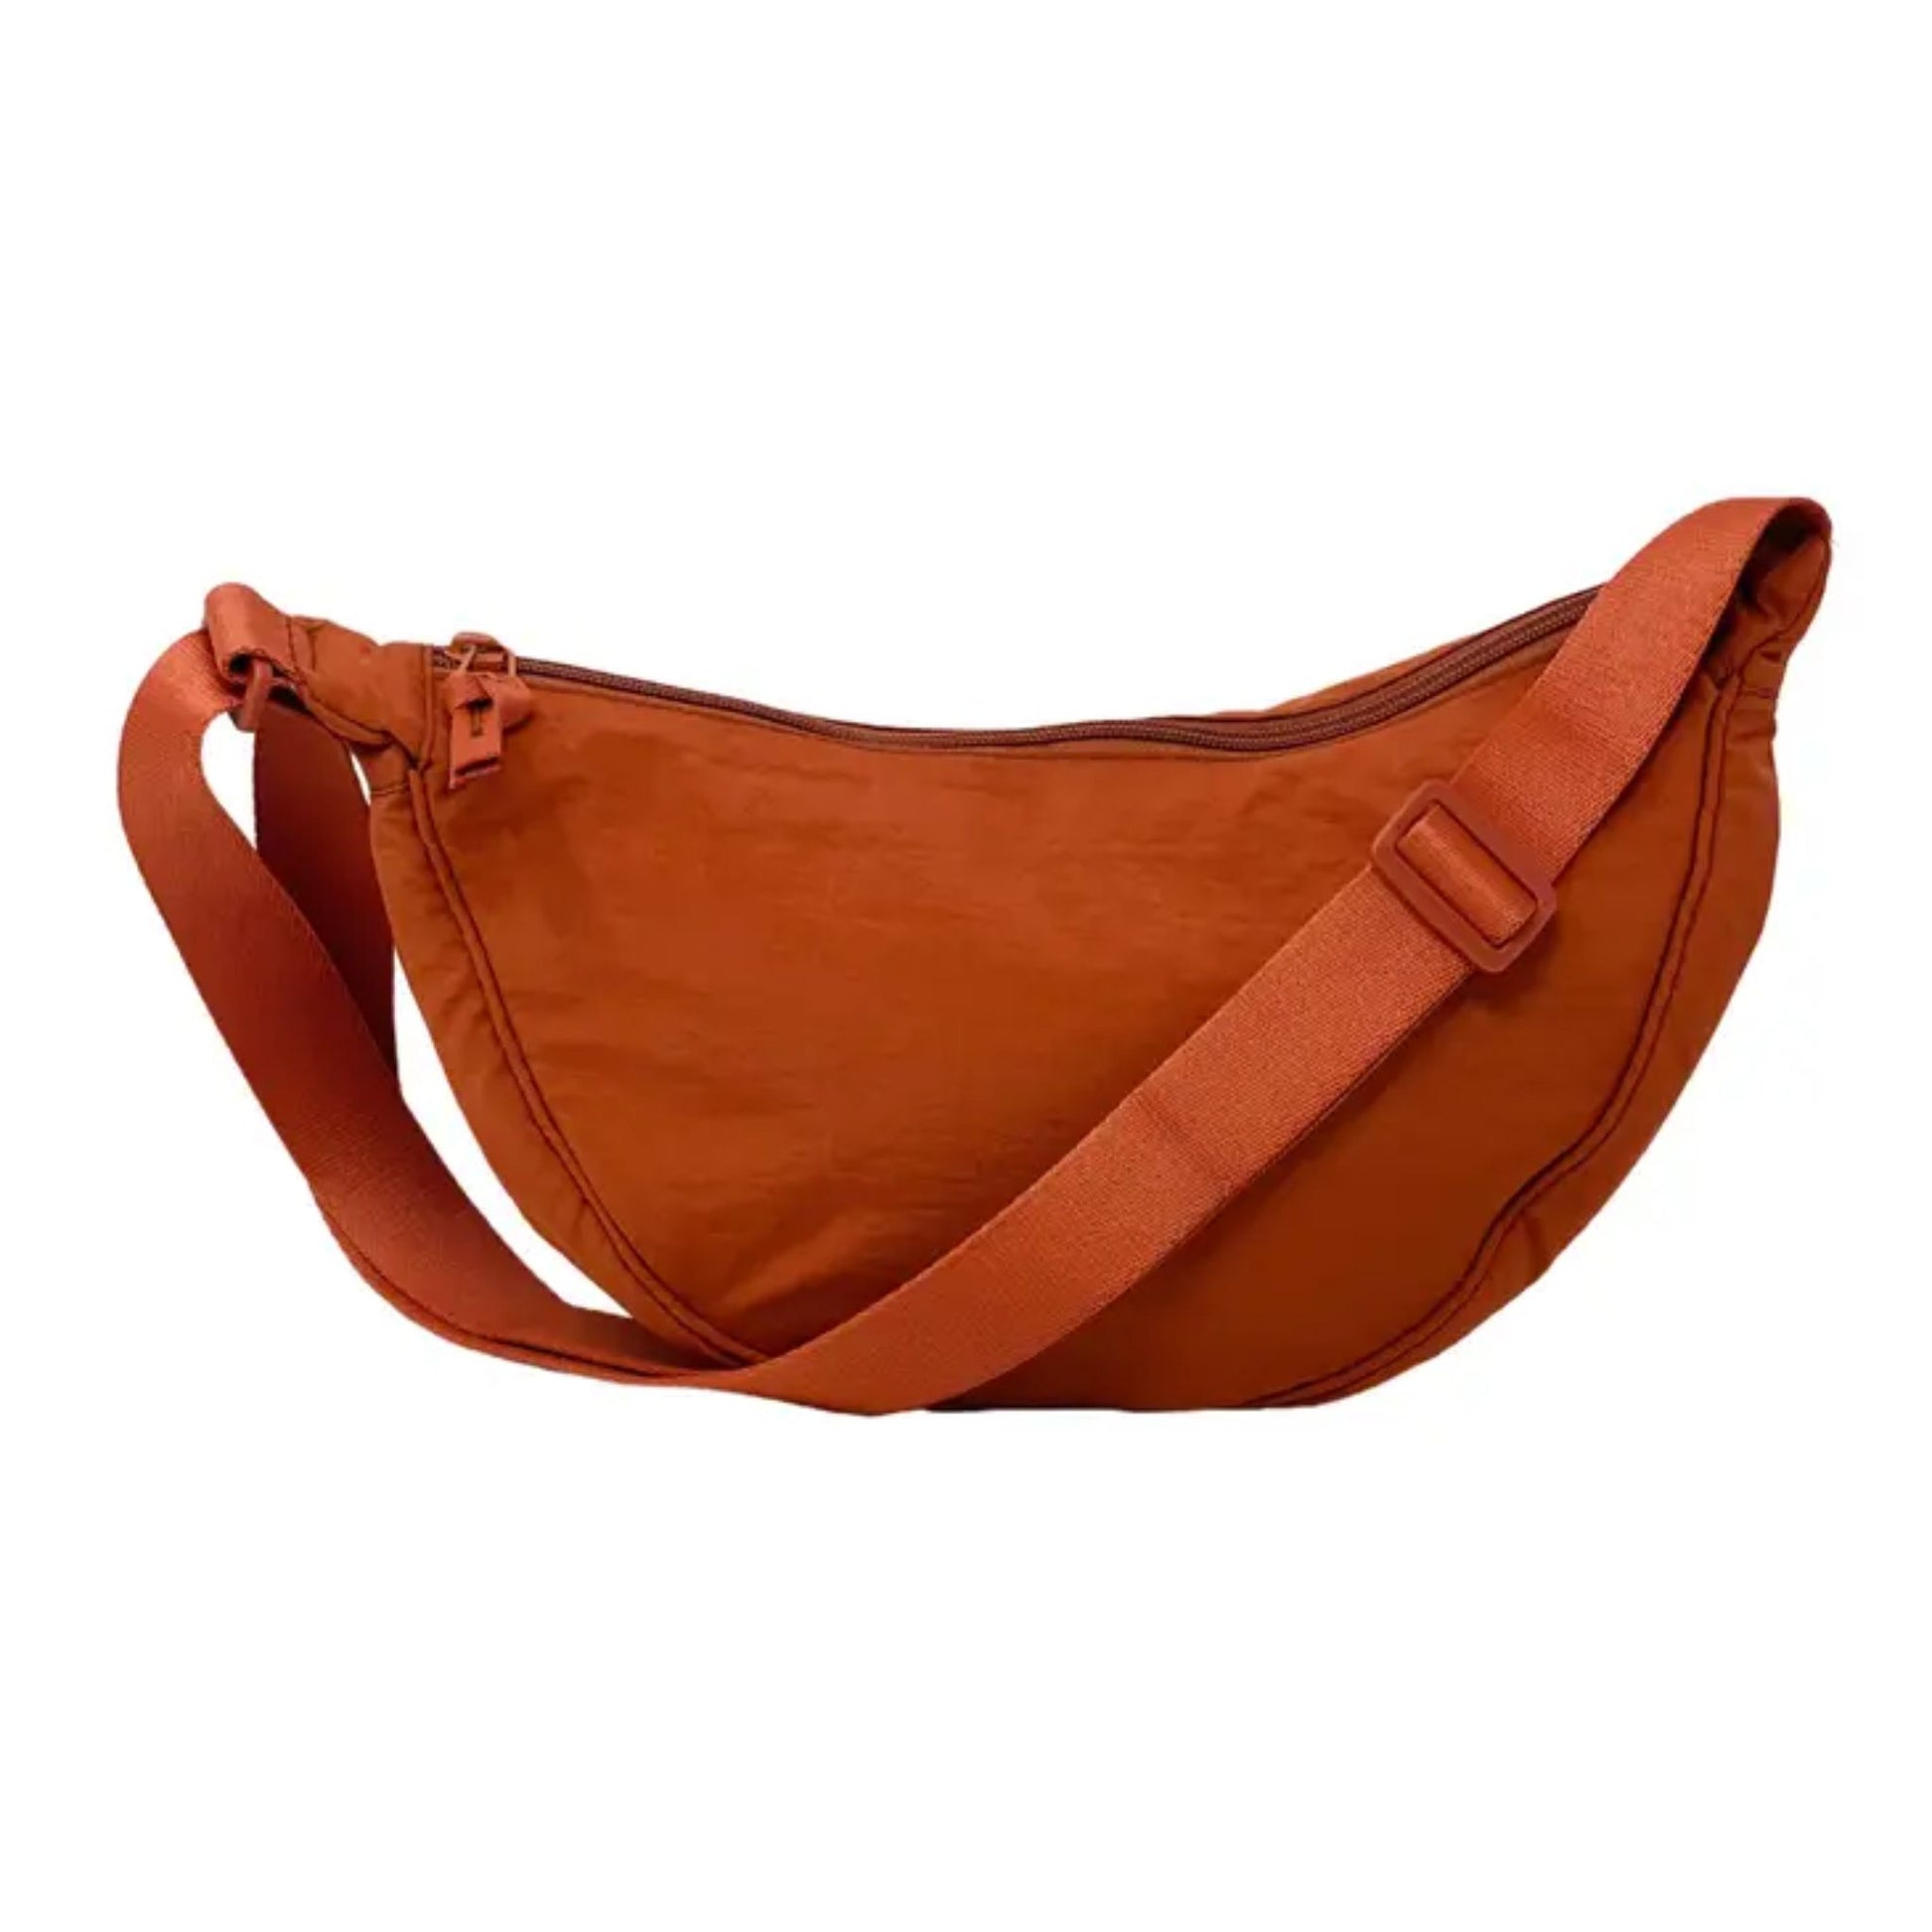 Cross body sling bag orange